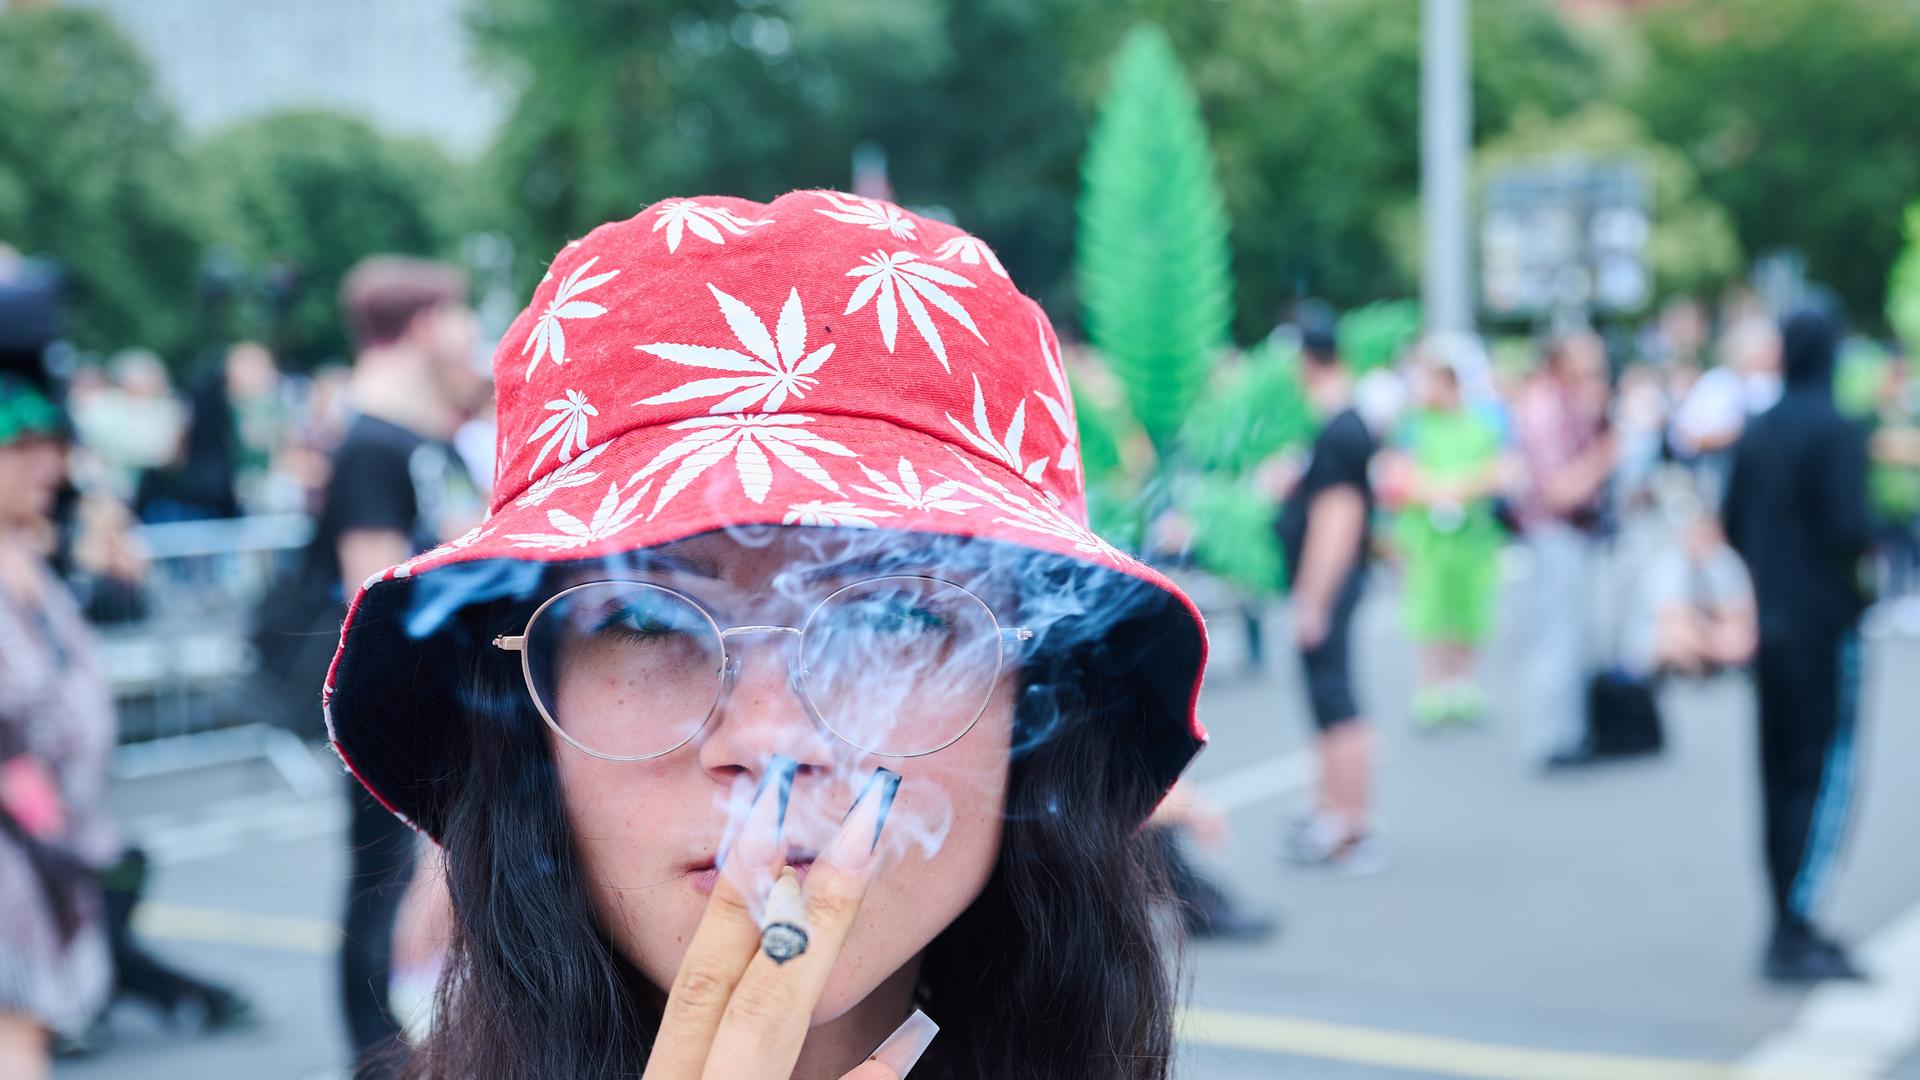 Die Teilnehmerin einer Demonstration für die Cannabis-Legalisierung raucht einen Joint auf der Hanfparade, die laut Angaben der Veranstalter die größte Demonstration für Cannabis in Deutschland ist